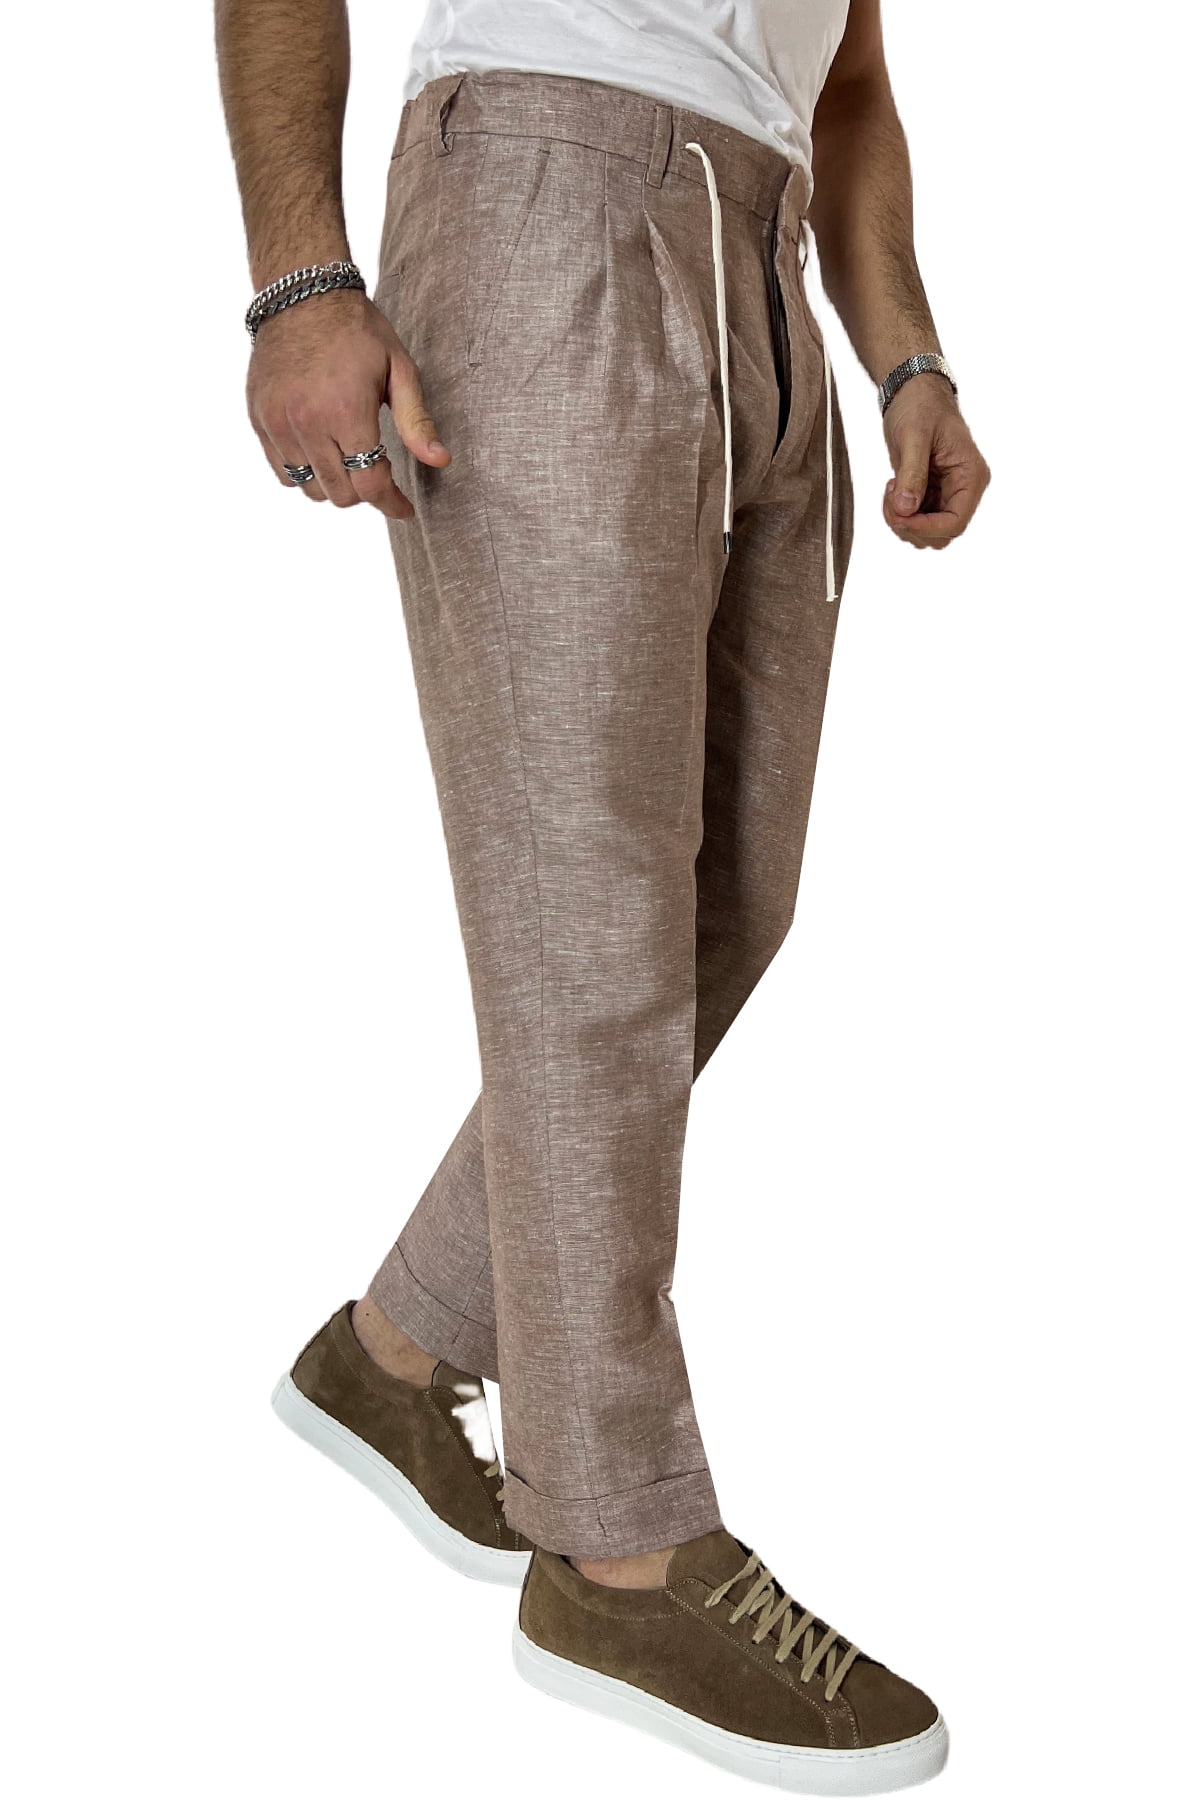 Pantalaccio uomo marrone in lino e cotone tasca america con doppia pence e laccio in vita risvolto 4cm